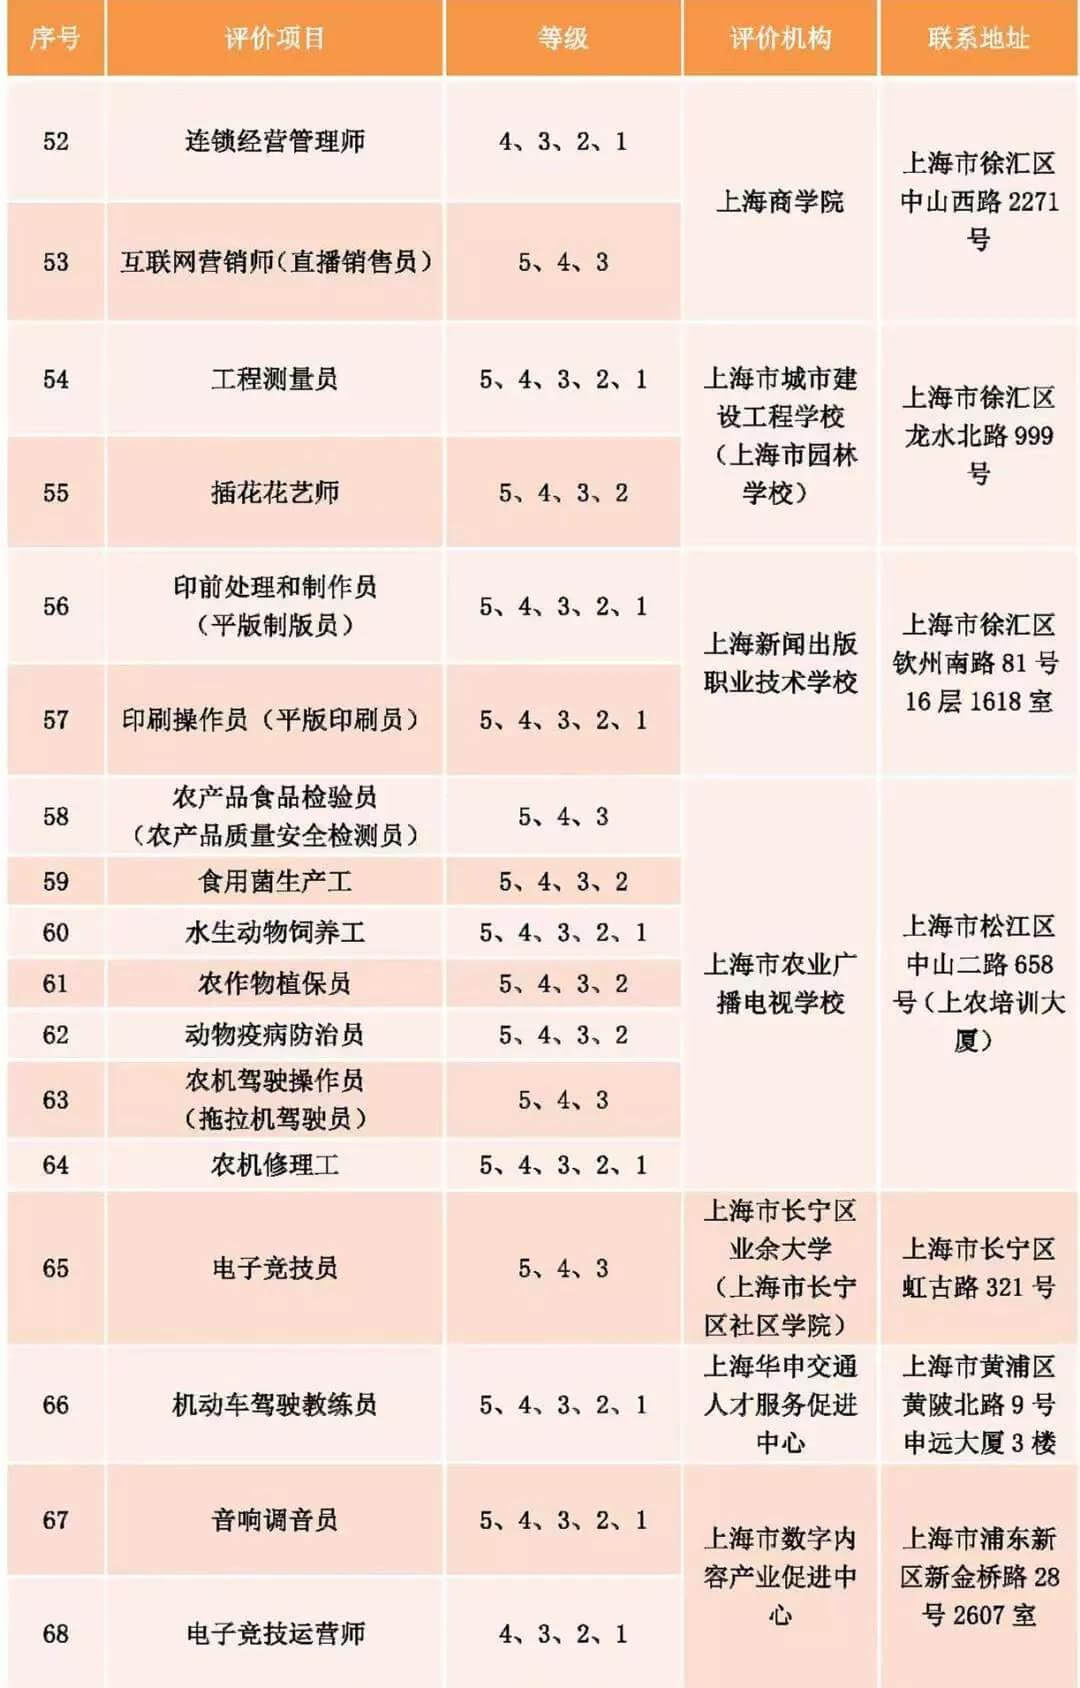 上海发布社会化职业技能评价目录！25个专项停止考试！不再发证书！